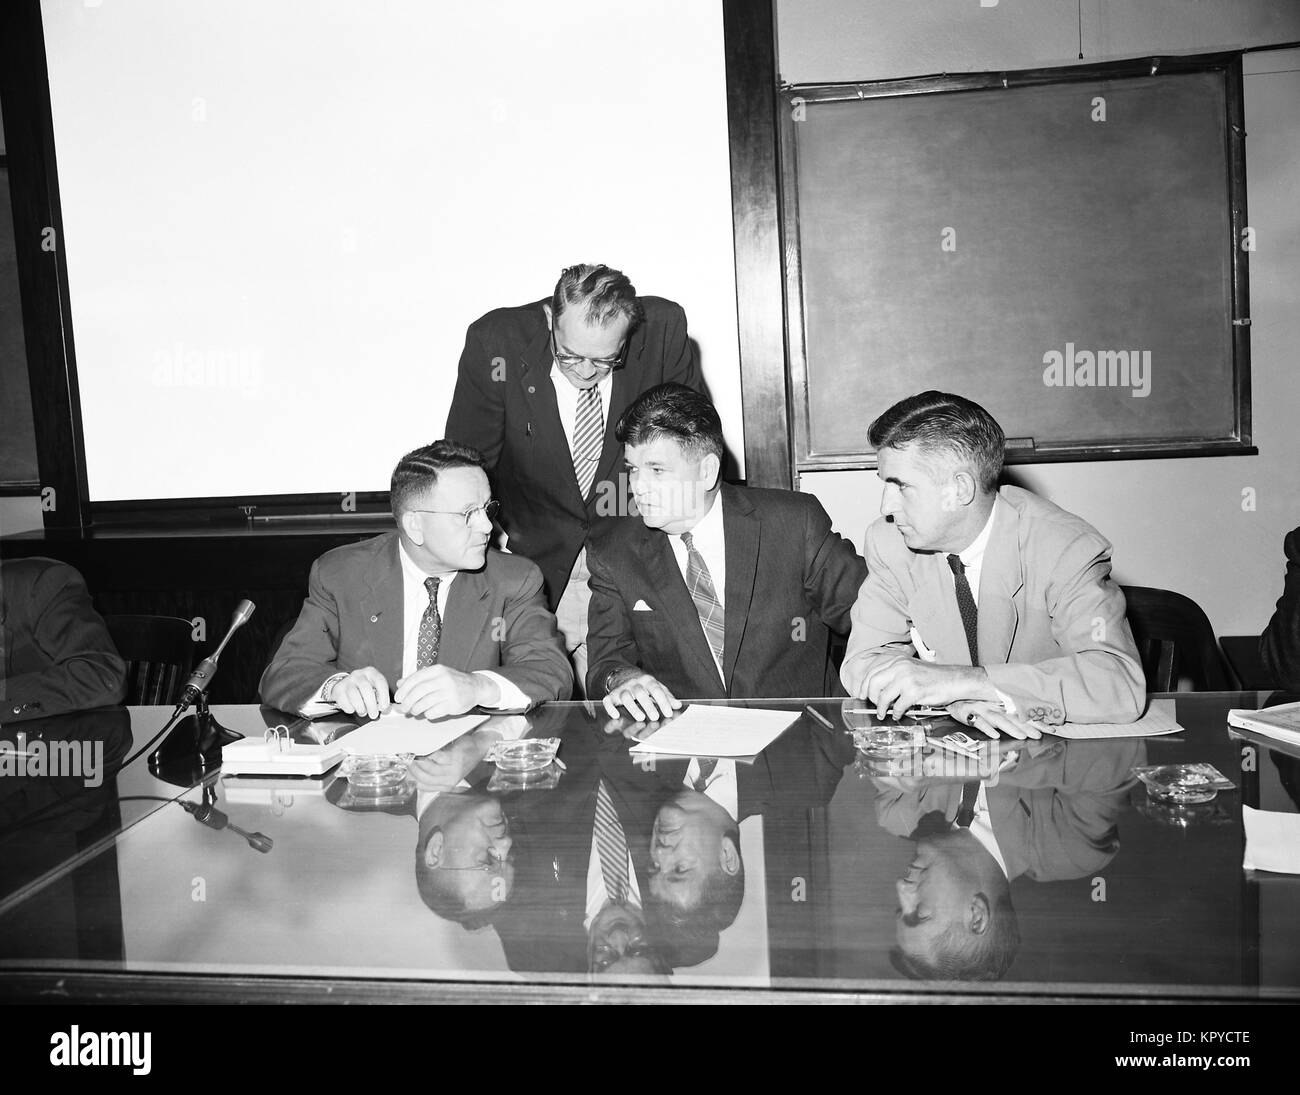 Dieses 1956 Foto zeigt die folgenden vier CDC Beamte während der Eröffnung eines Angebots für den Bau neuer CDC, 1956. Verschiedene staatliche Verträge werden von etablierten Protokollen, die oft einen Bieterprozess unter interessierten Parteien geregelt. Mit freundlicher CDC. Stockfoto